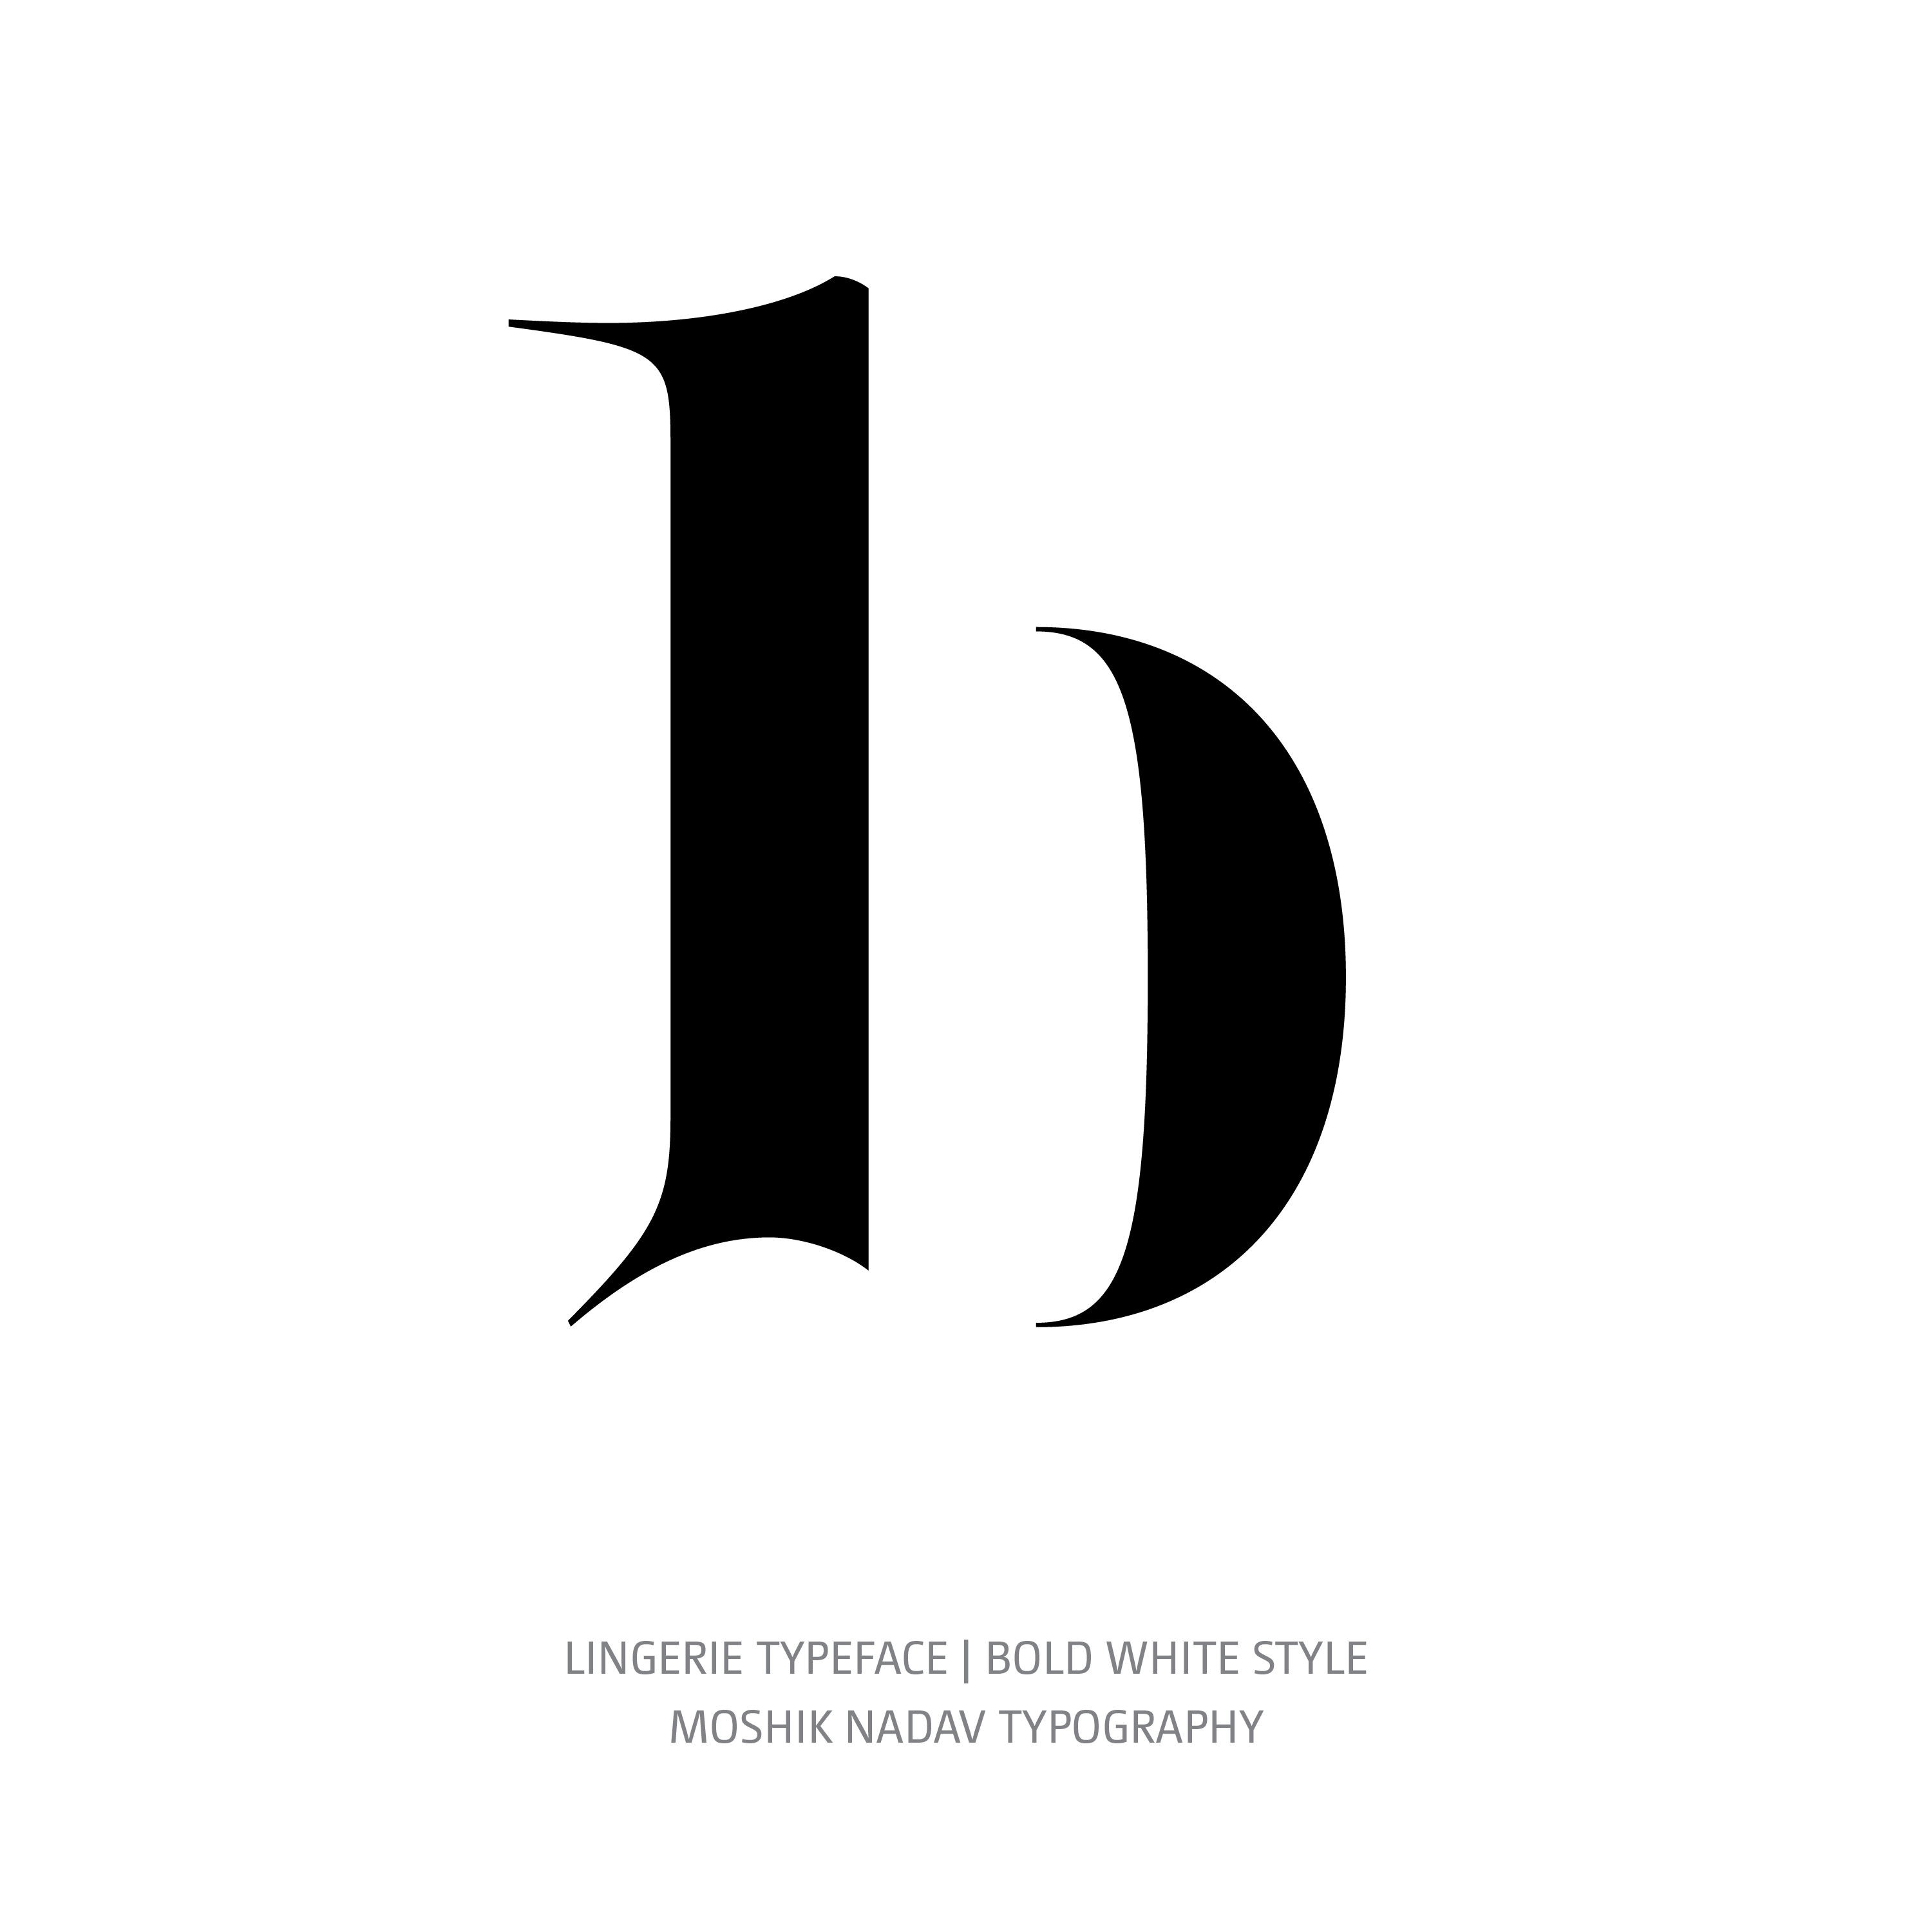 Lingerie Typeface Bold White b